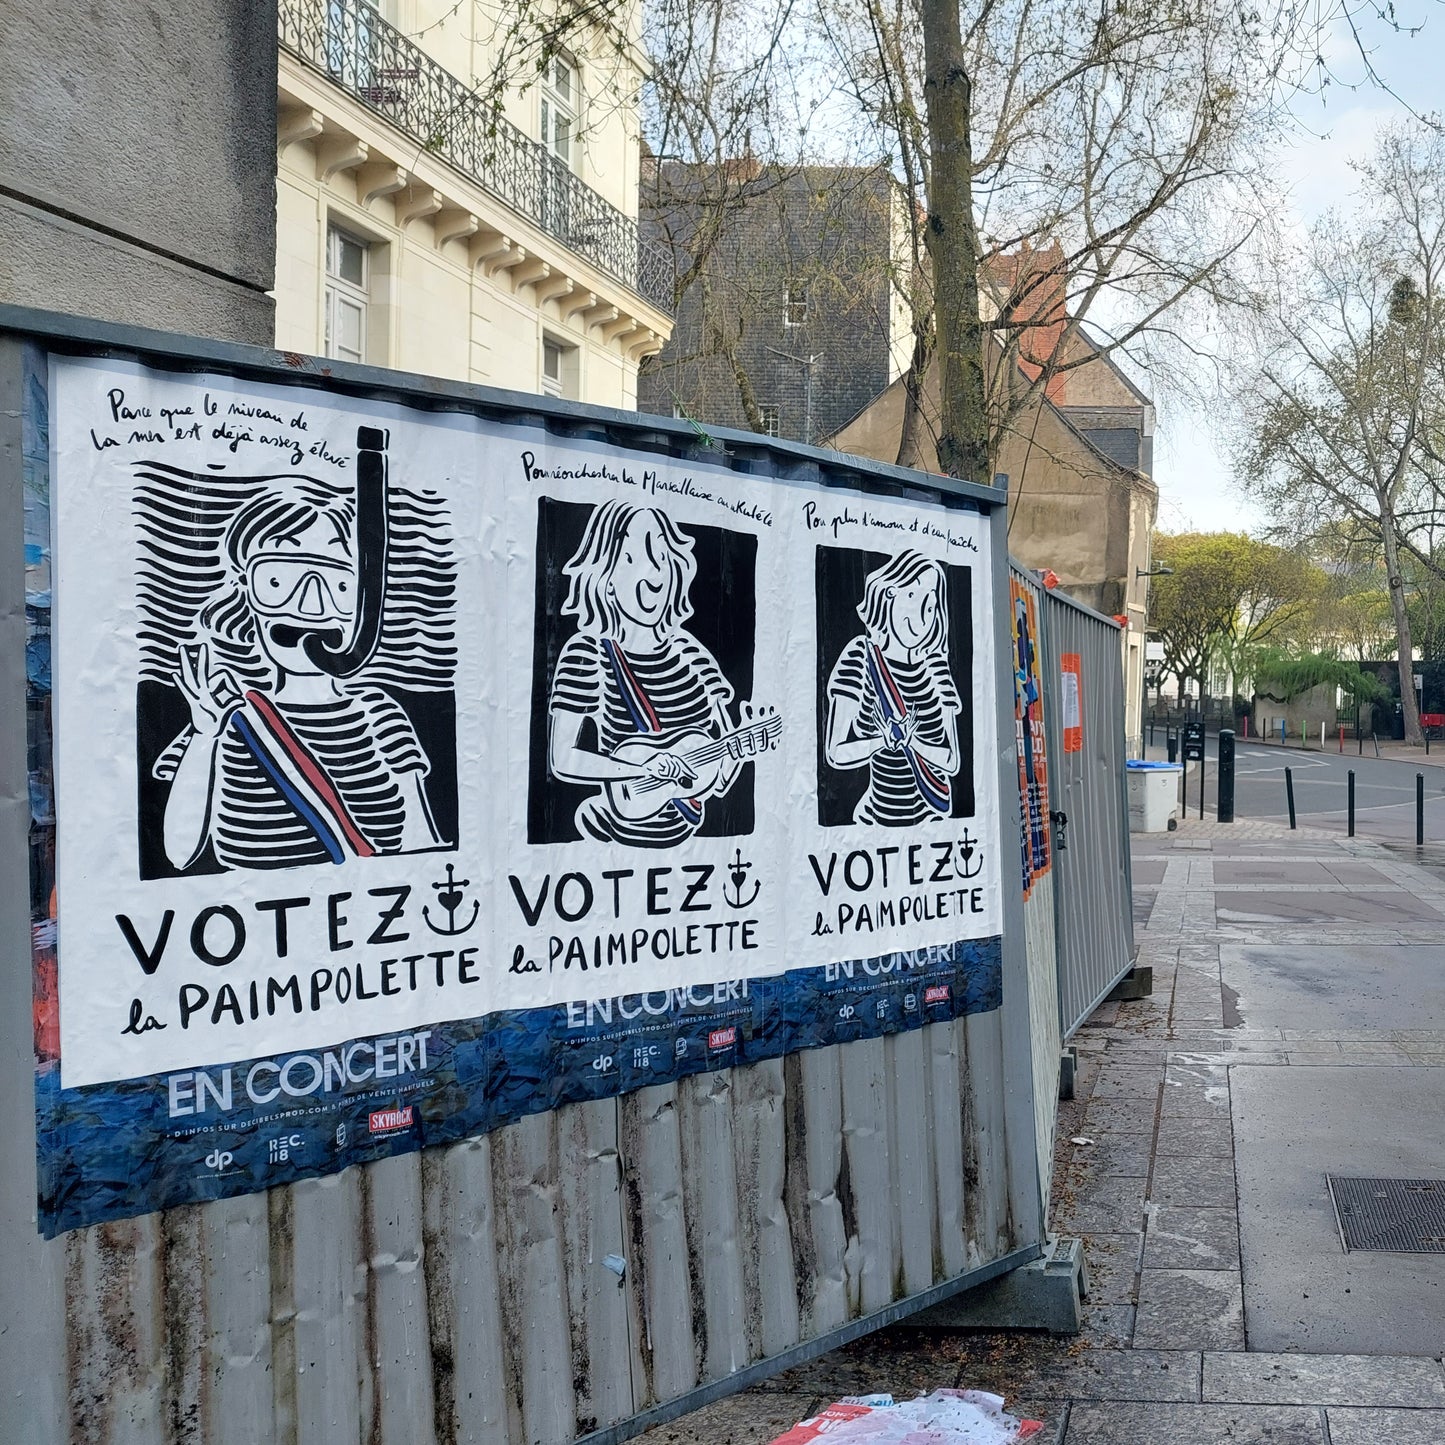 AFFICHE "Pour cesser de se faire tentaculer VOTEZ LA PAIMPOLETTE"